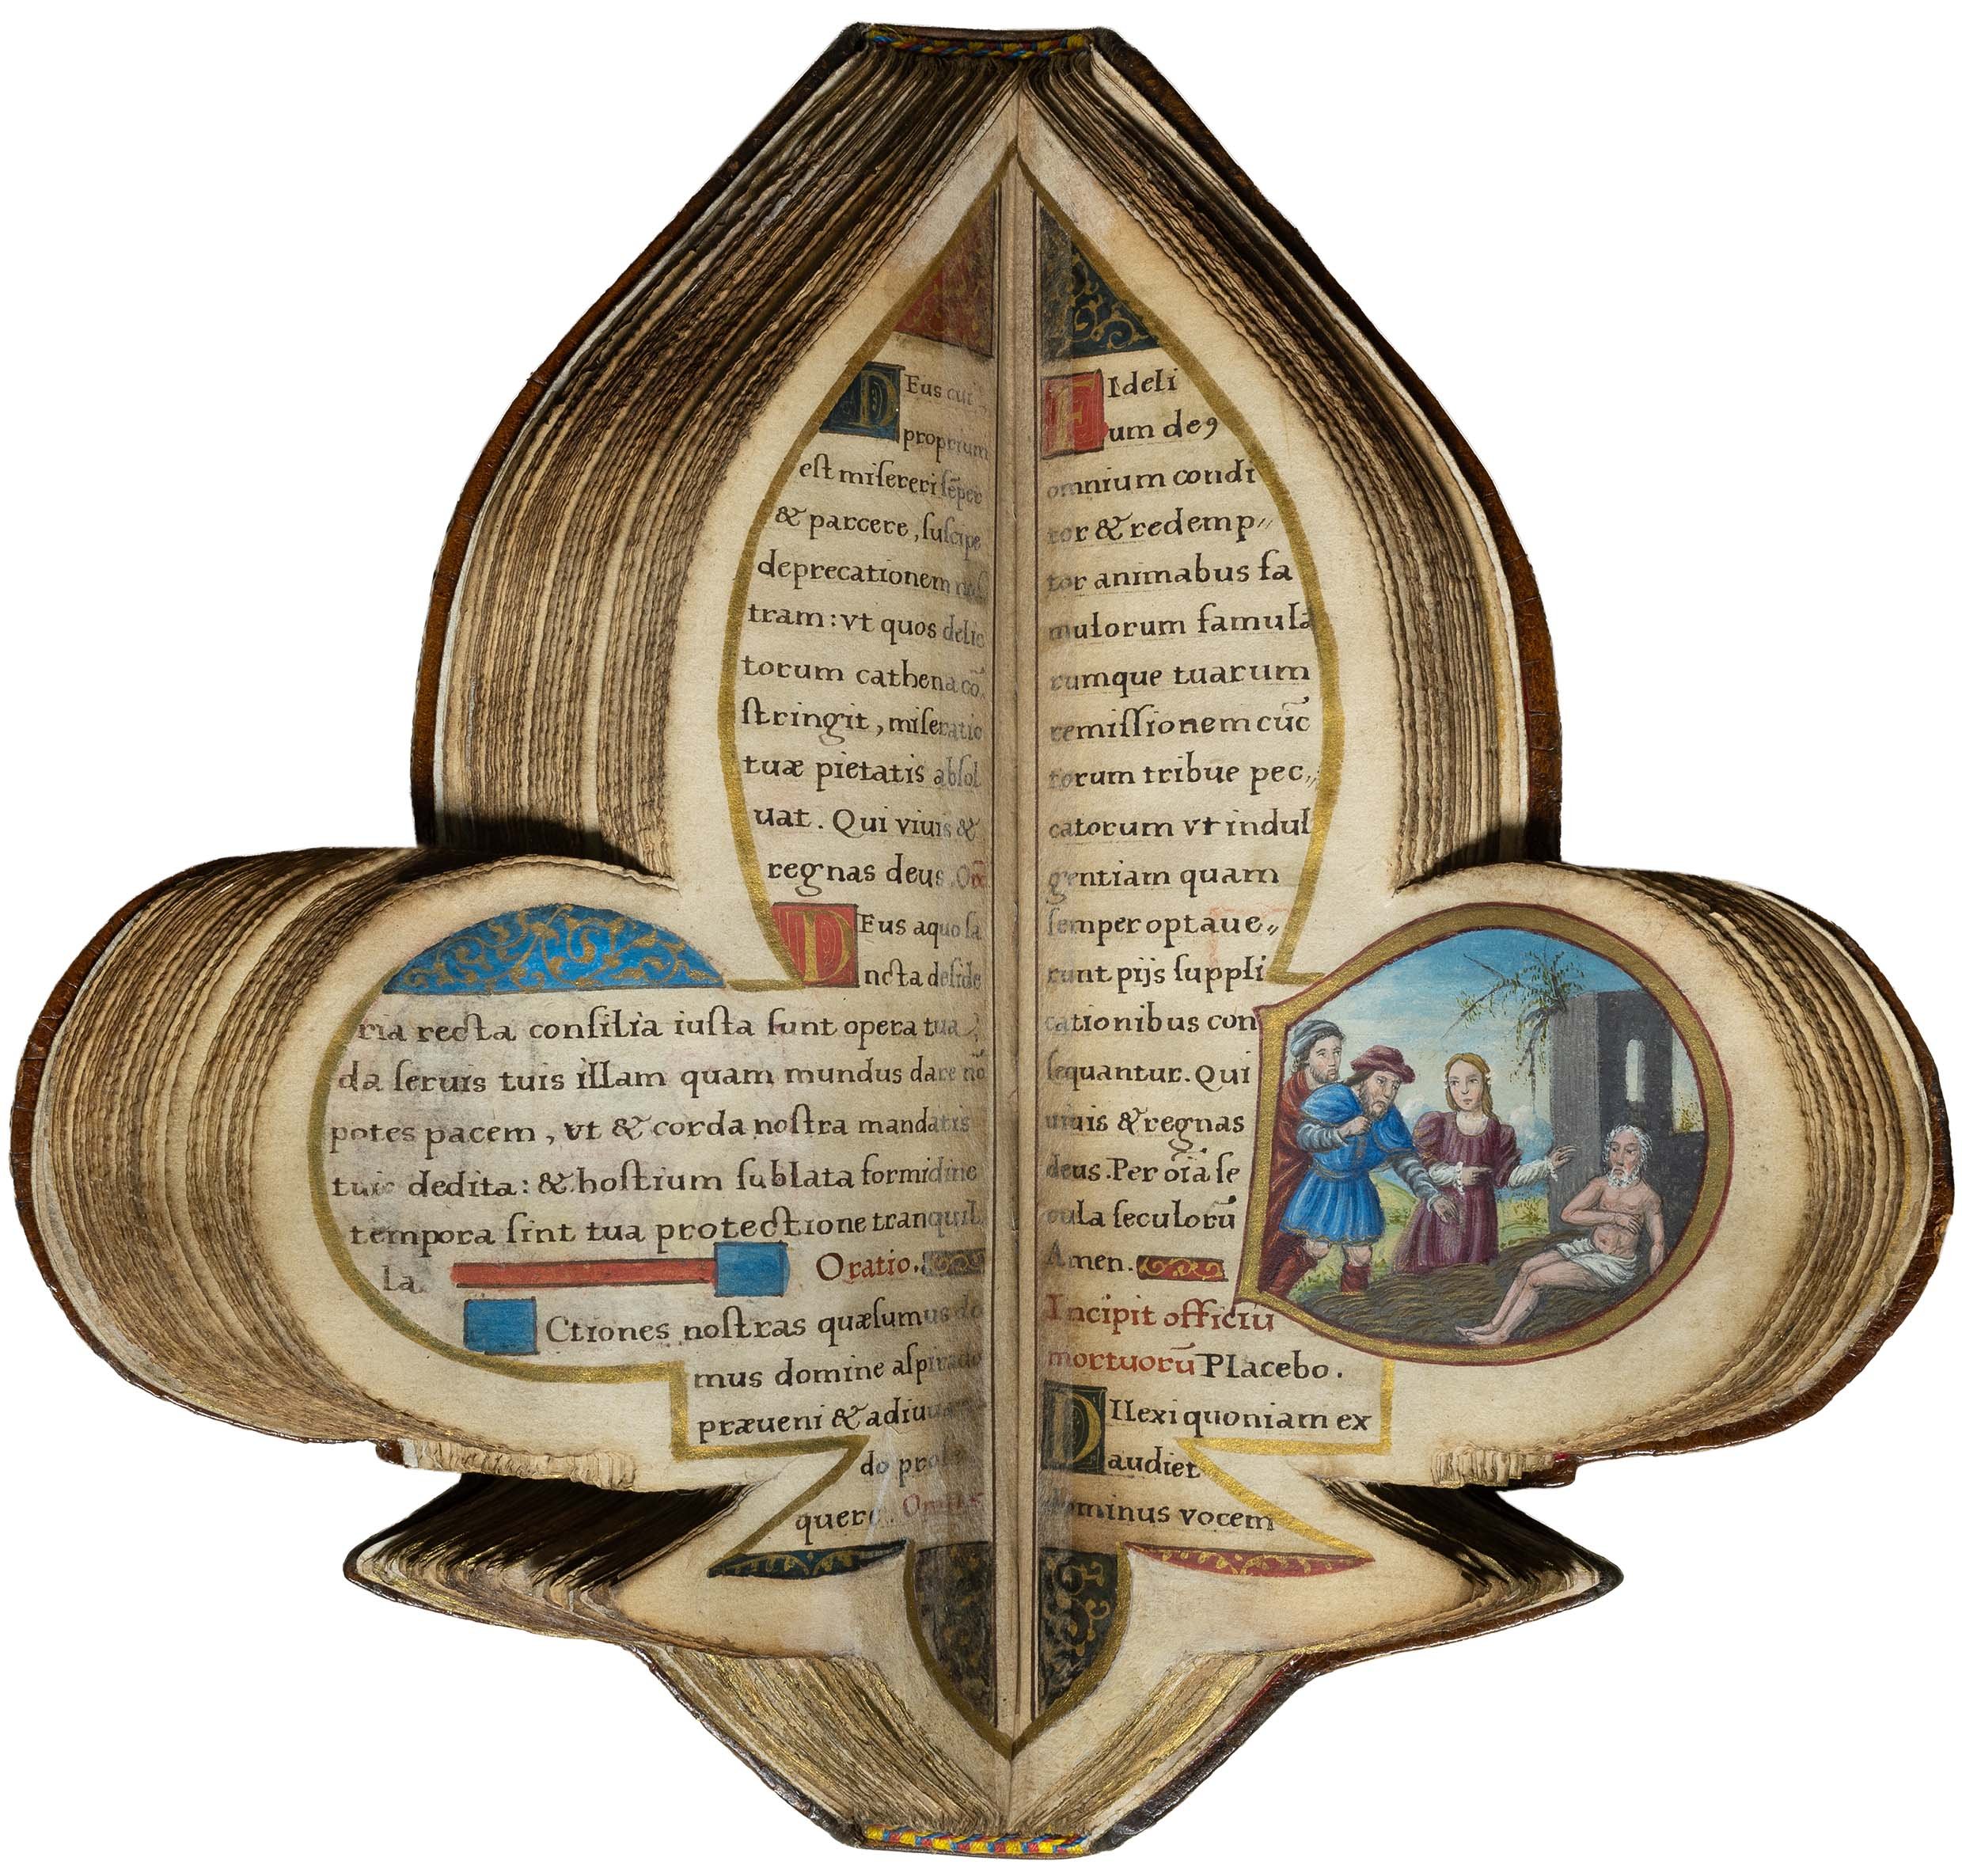 Book-of-hours-bourbon-lily-shape-manuscript-napoleon-beauharnais-combermere-paris-16th-century-23.jpg